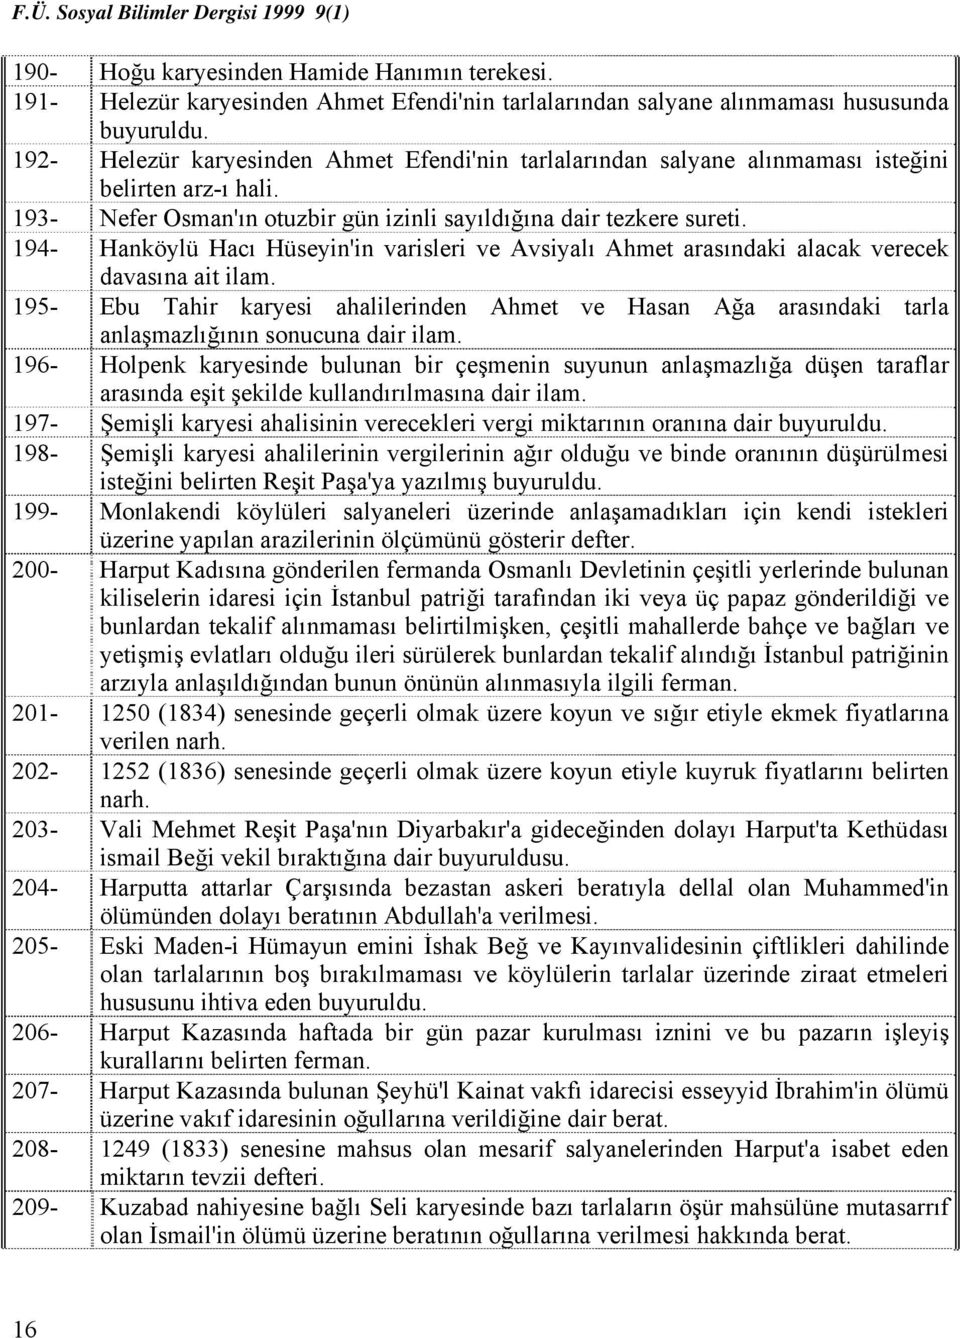 194- Hanköylü Hacı Hüseyin'in varisleri ve Avsiyalı Ahmet arasındaki alacak verecek davasına ait ilam.